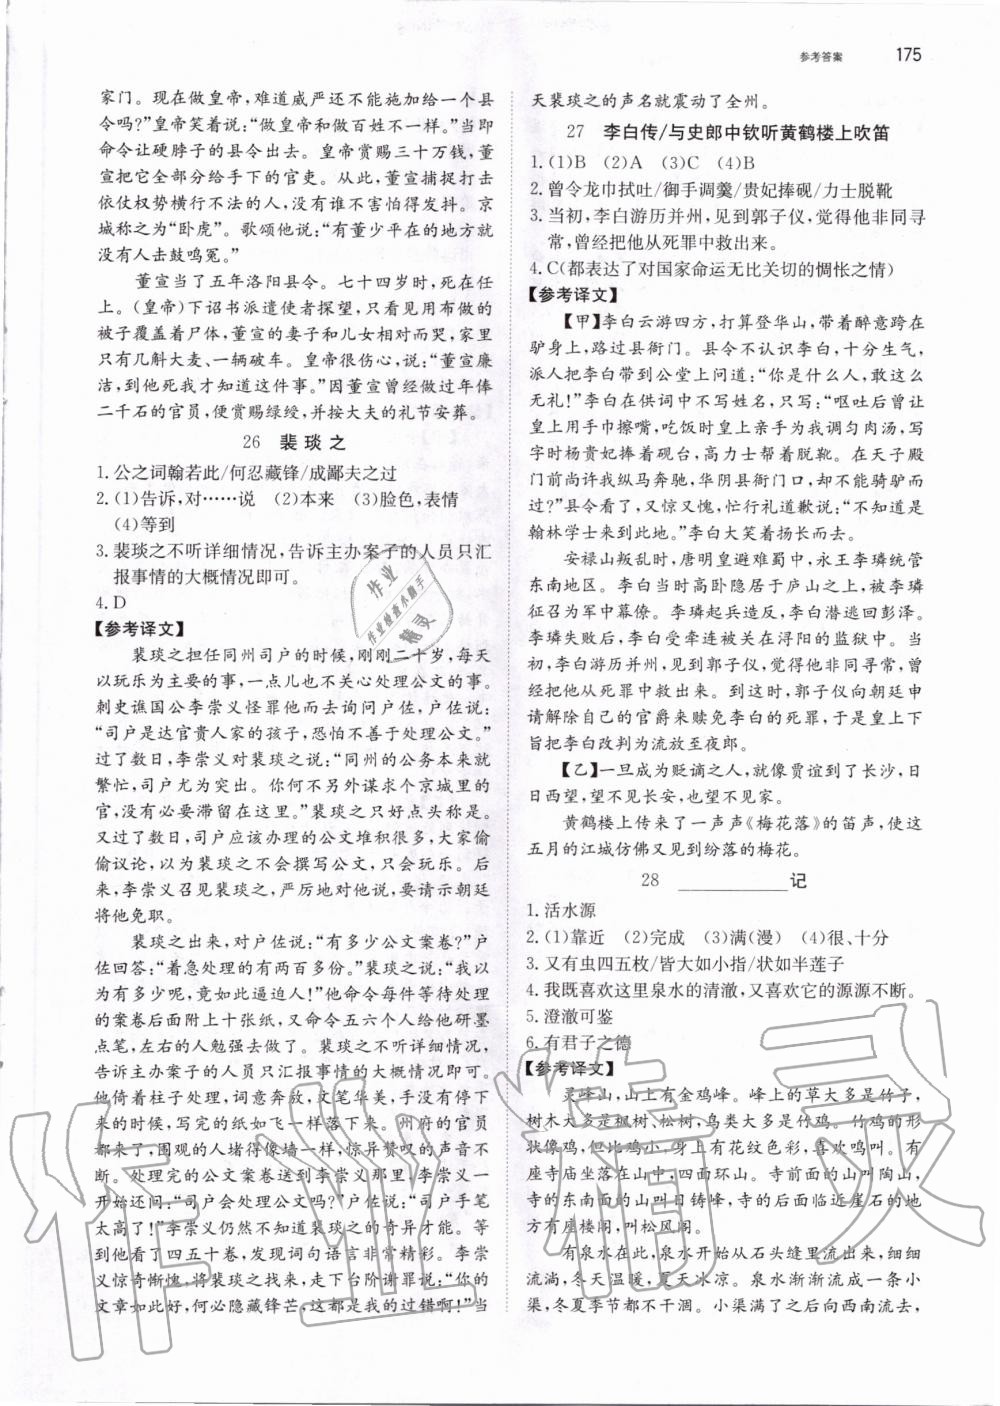 2019年锐阅读初中语文阅读训练5合1中考 第21页